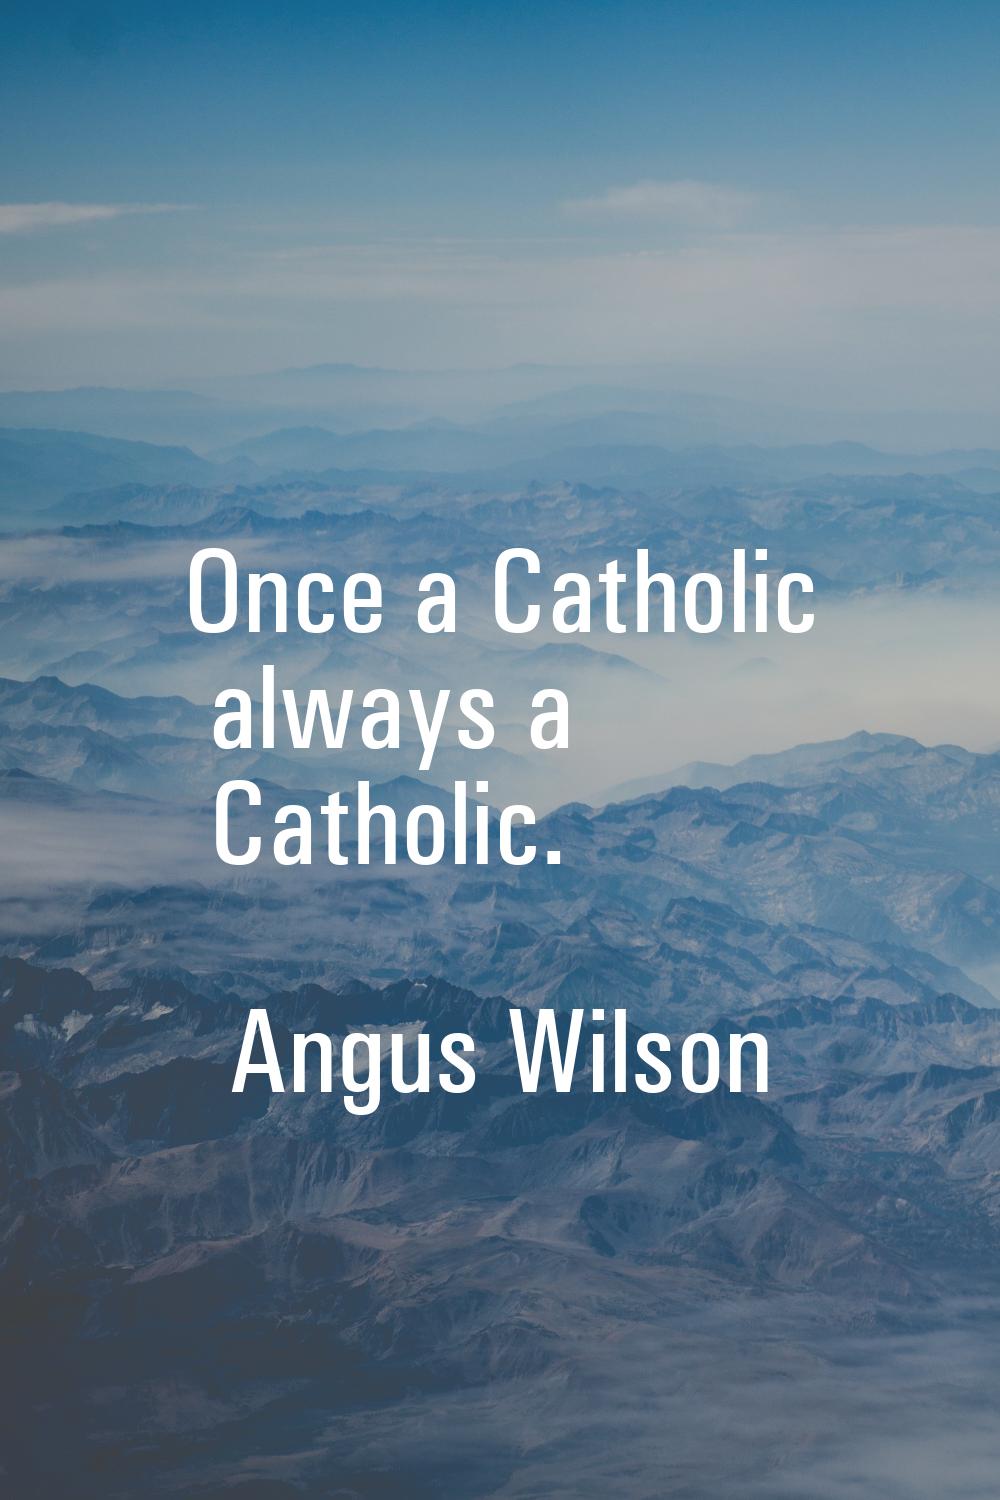 Once a Catholic always a Catholic.